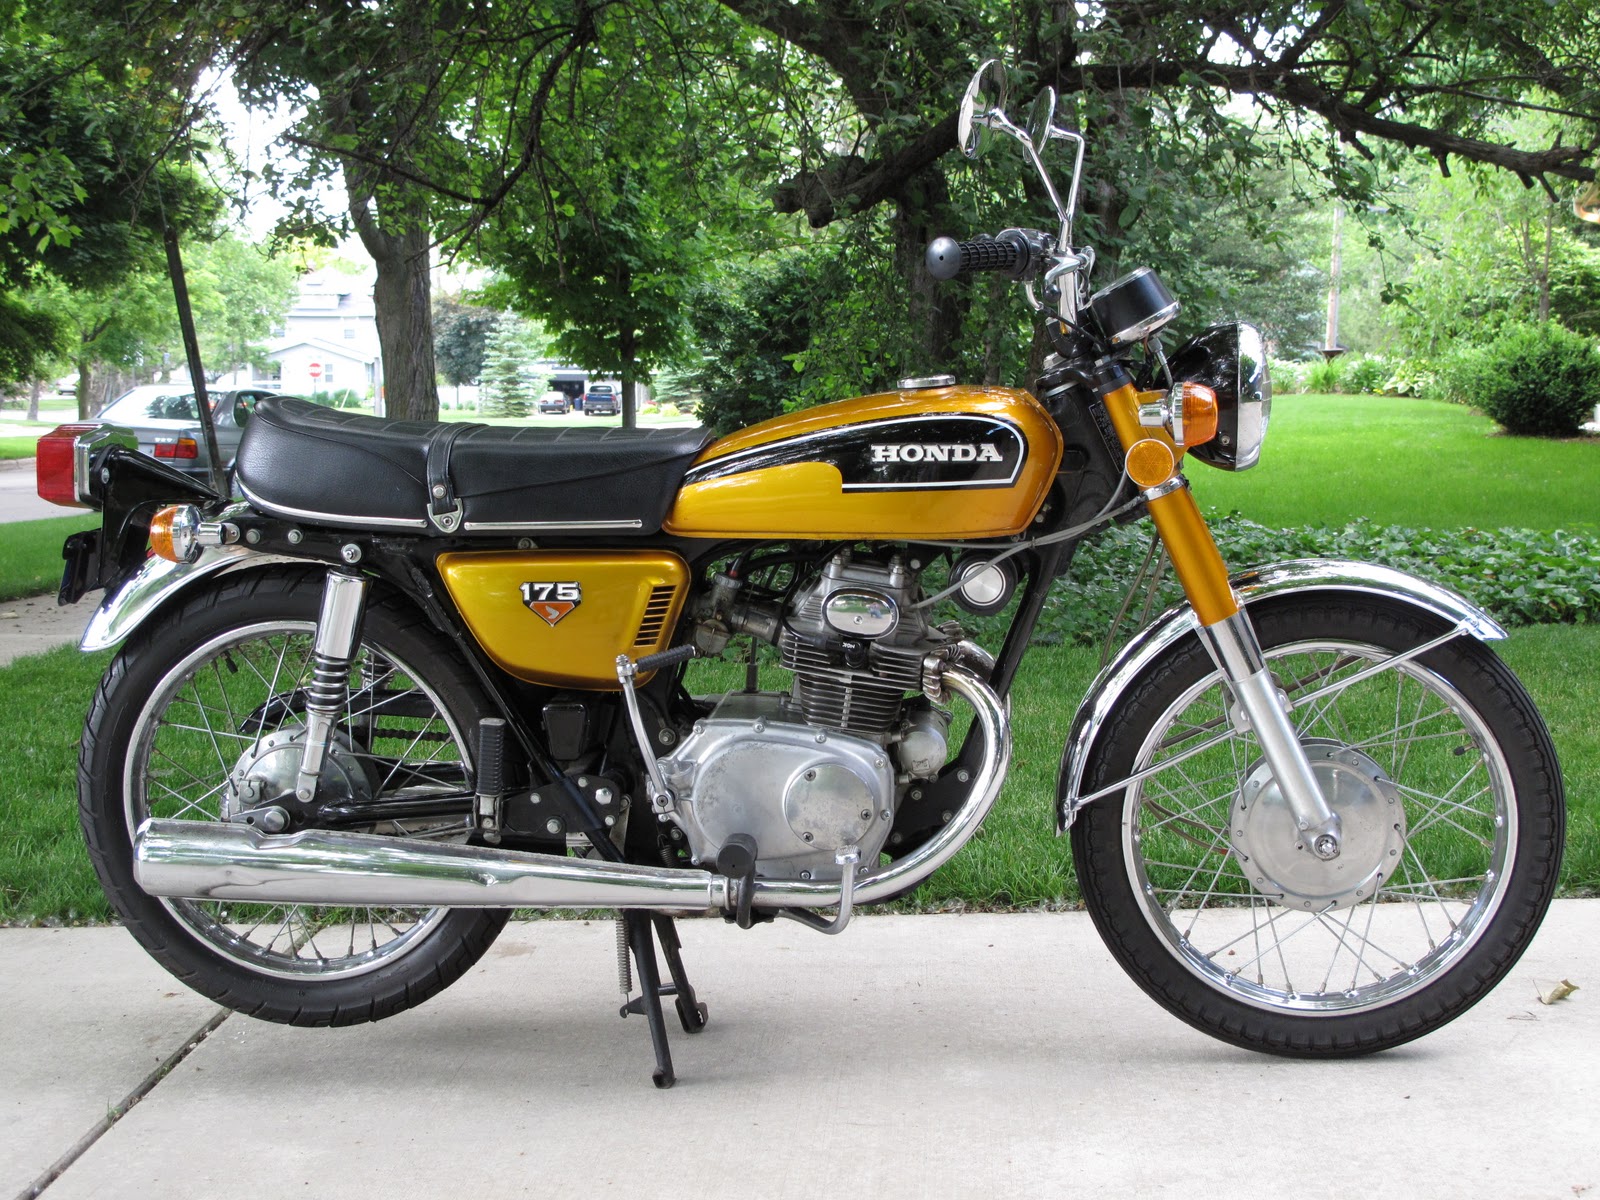 1972 Honda cb175 for sale